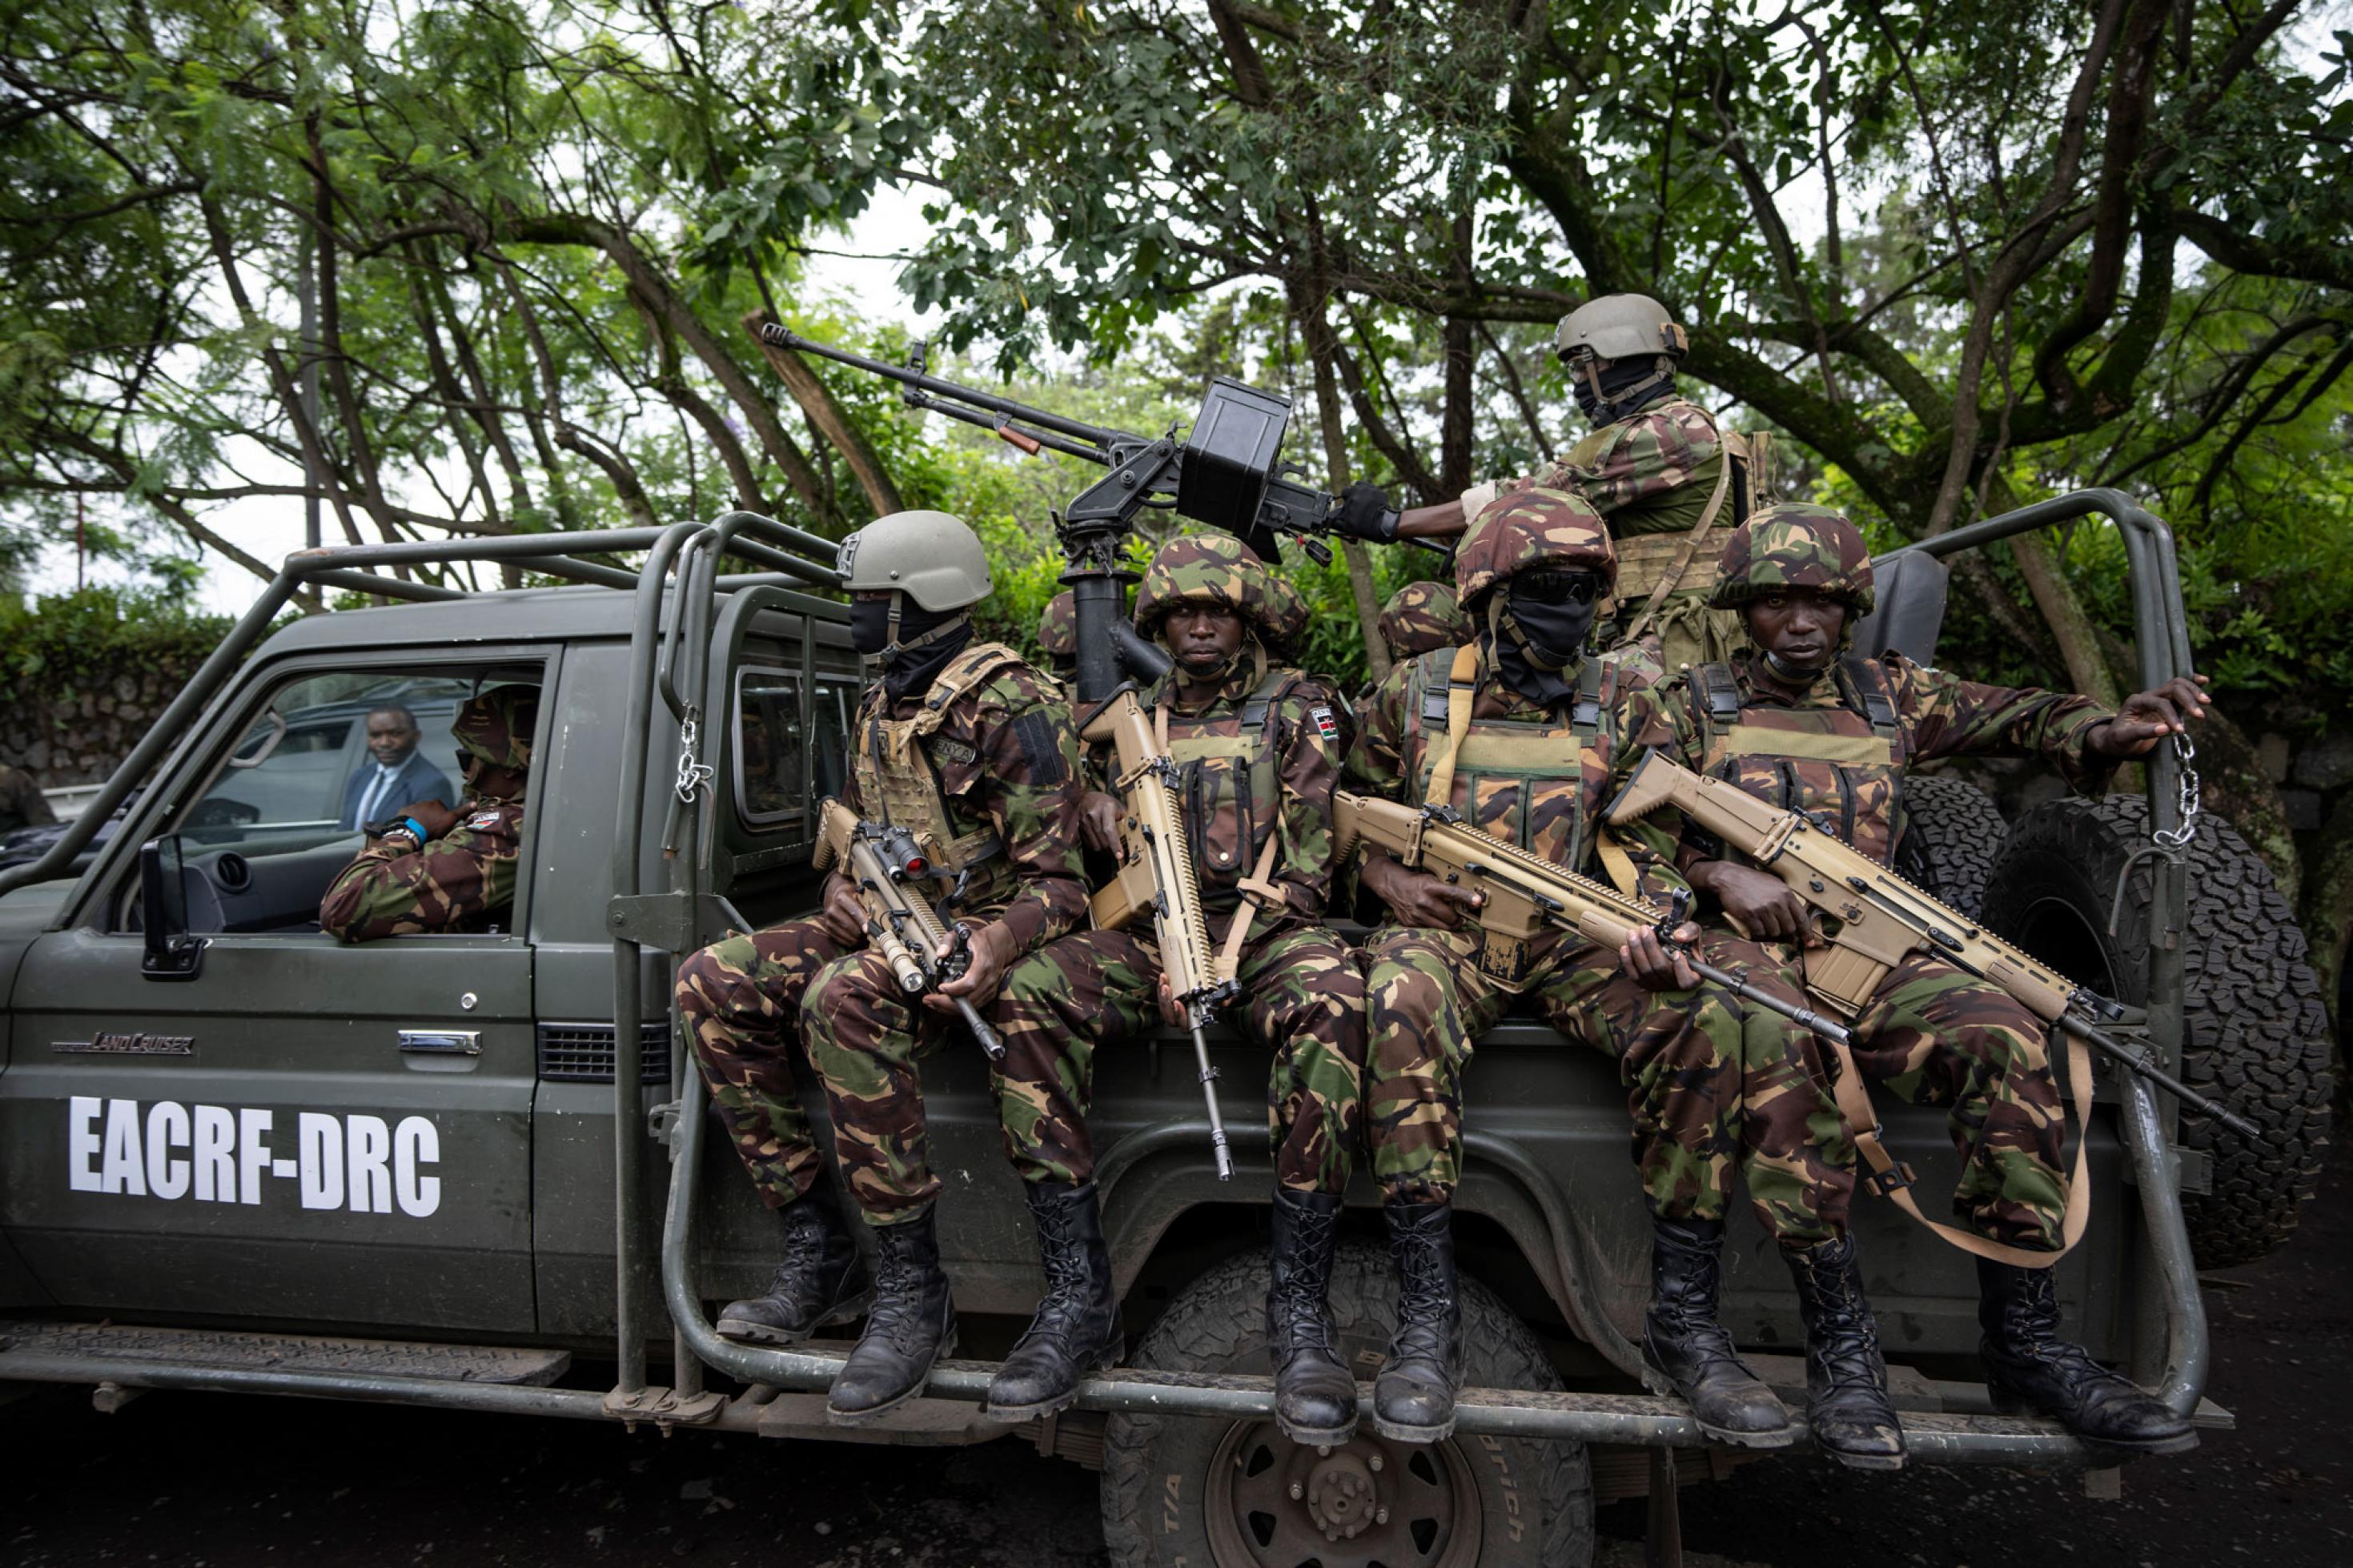 Ein militärischer Pickup mit Soldaten, die schwerbewaffnet hinten auf dem Pickup sitzen, in Tarnuniform und mit Helmen.